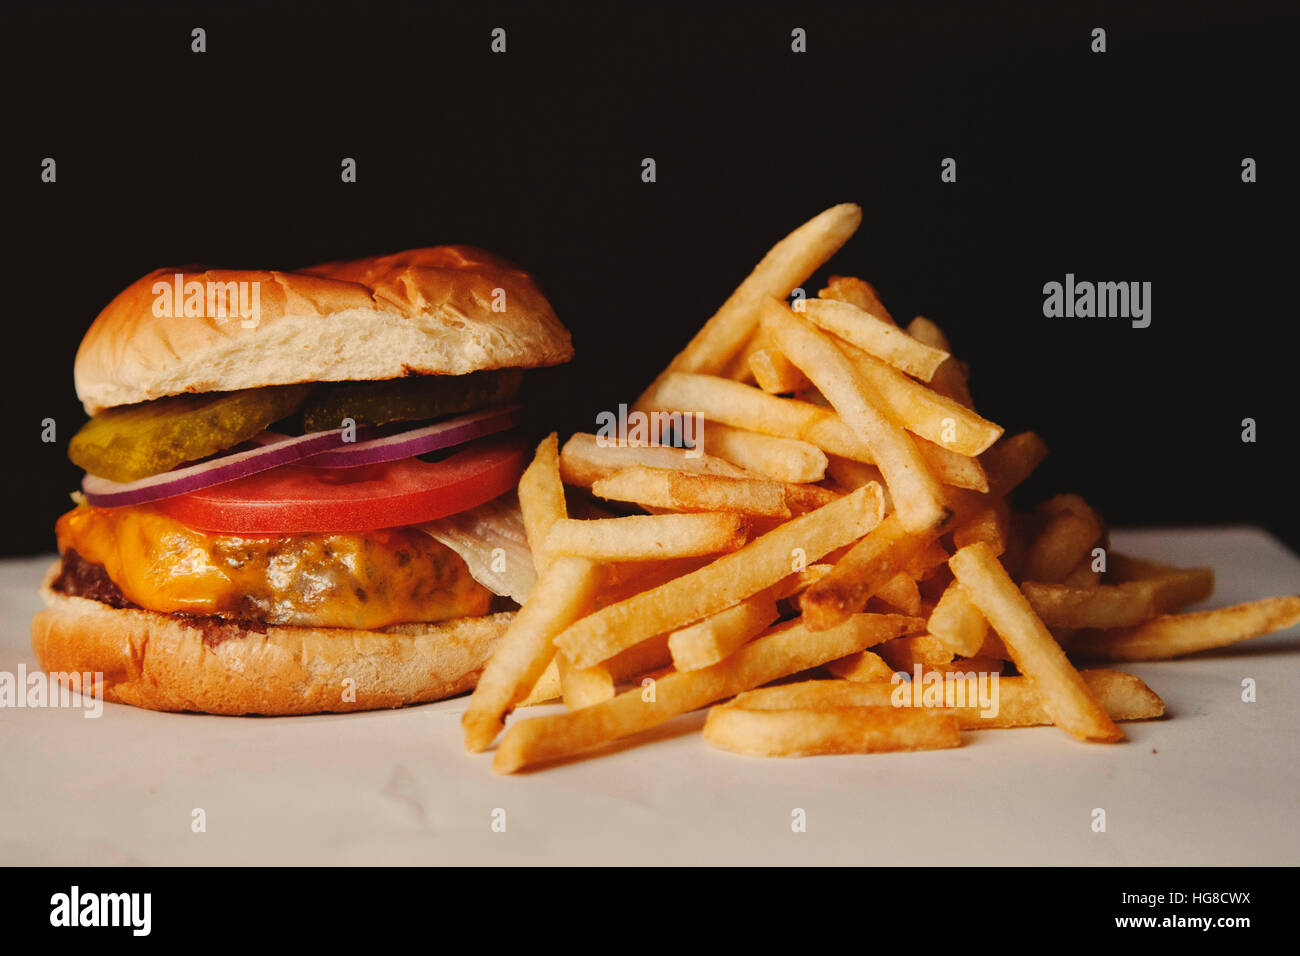 Close-up of hamburger avec frites on table sur fond noir Banque D'Images